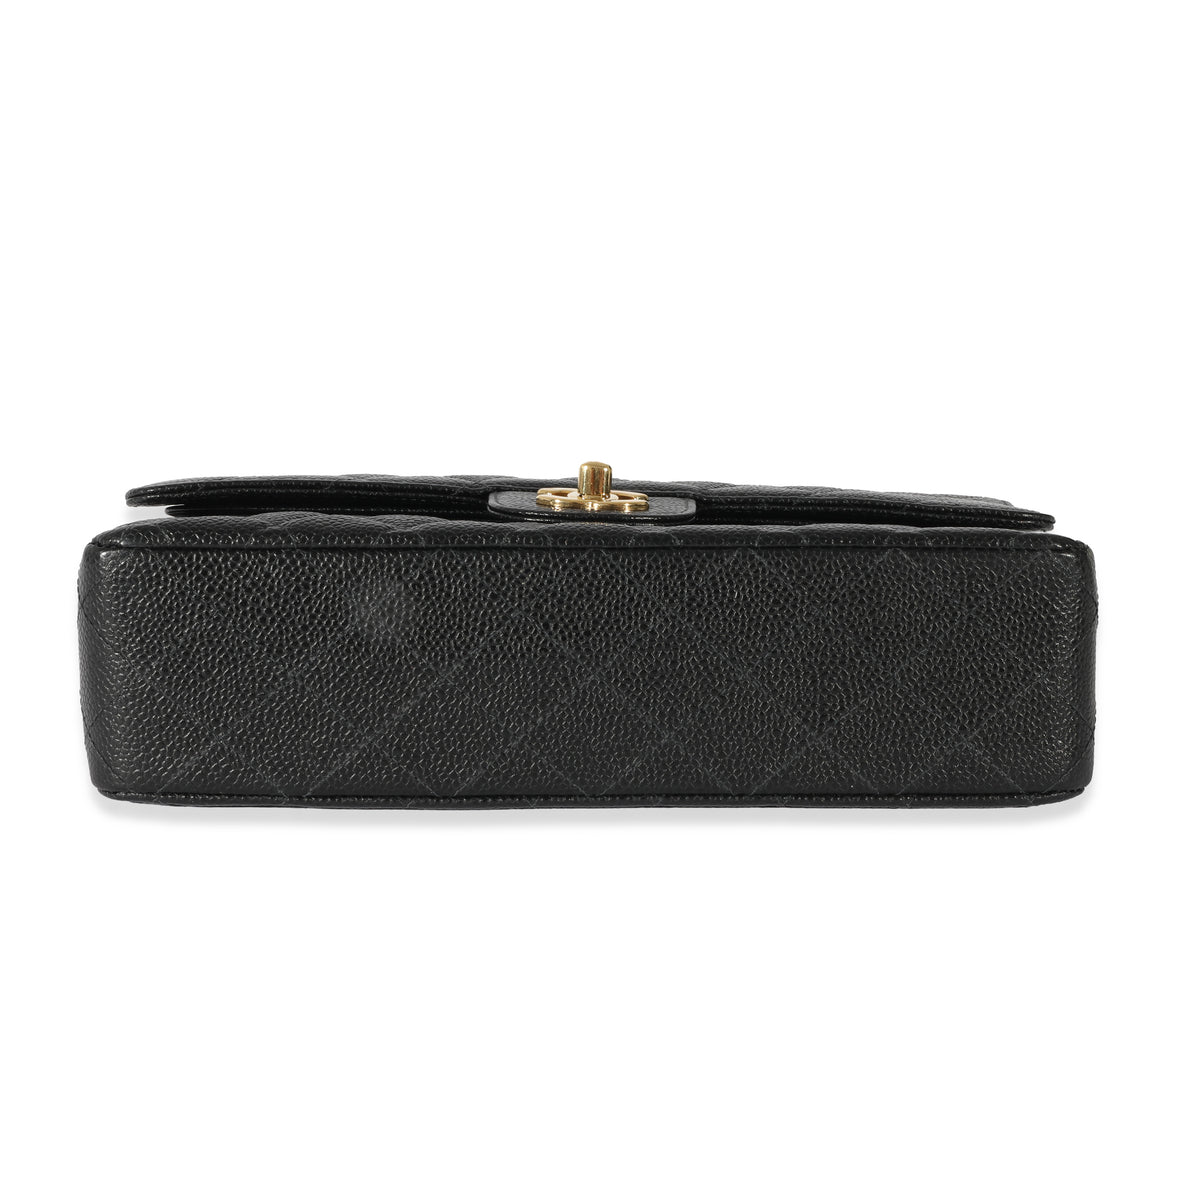 Chanel Black Caviar Medium Classic Flap Bag, myGemma, FR